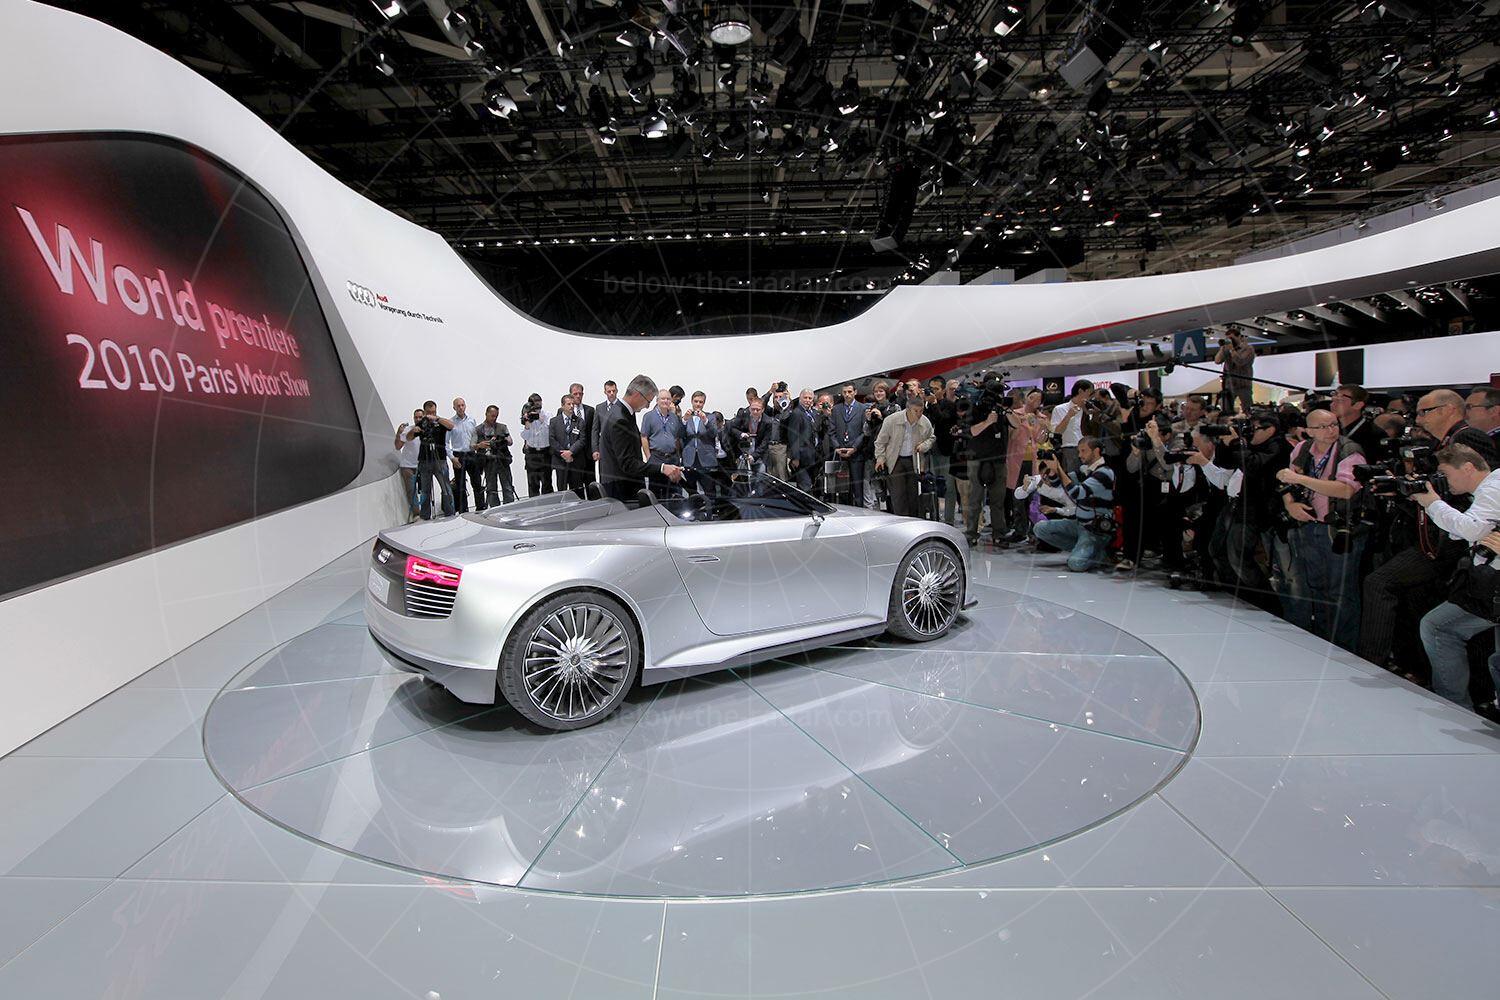 Audi e-tron Spyder making its debut Pic: magiccarpics.co.uk | Audi e-tron Spyder making its debut